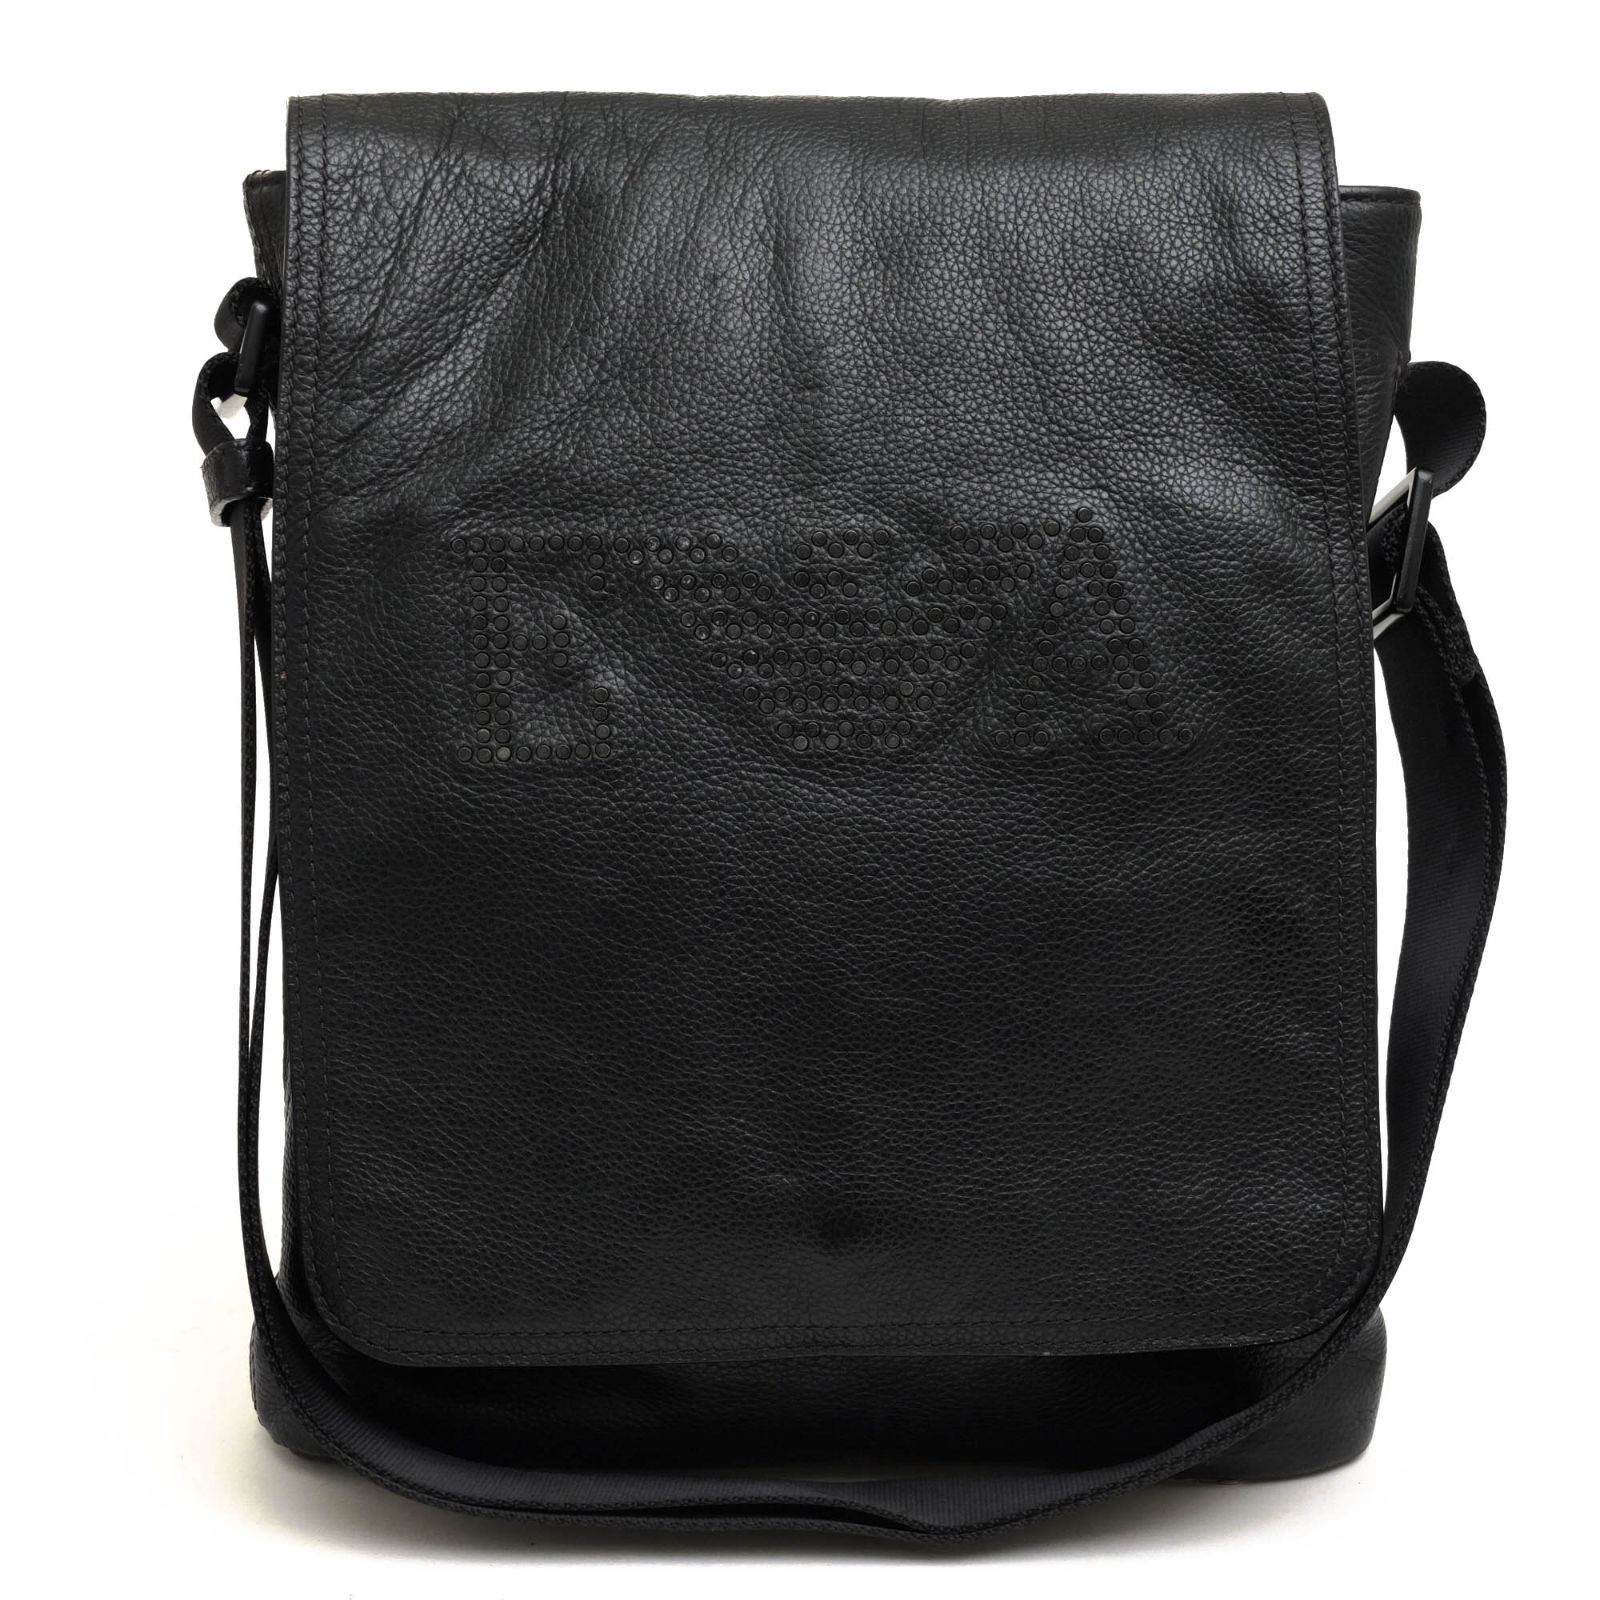 アルマーニ／EMPORIO ARMANI バッグ ショルダーバッグ 鞄 メンズ 男性 男性用レザー 革 本革 ネイビー 紺  YEMA11 YCE24 メッセンジャーバッグ ウォッシュ加工